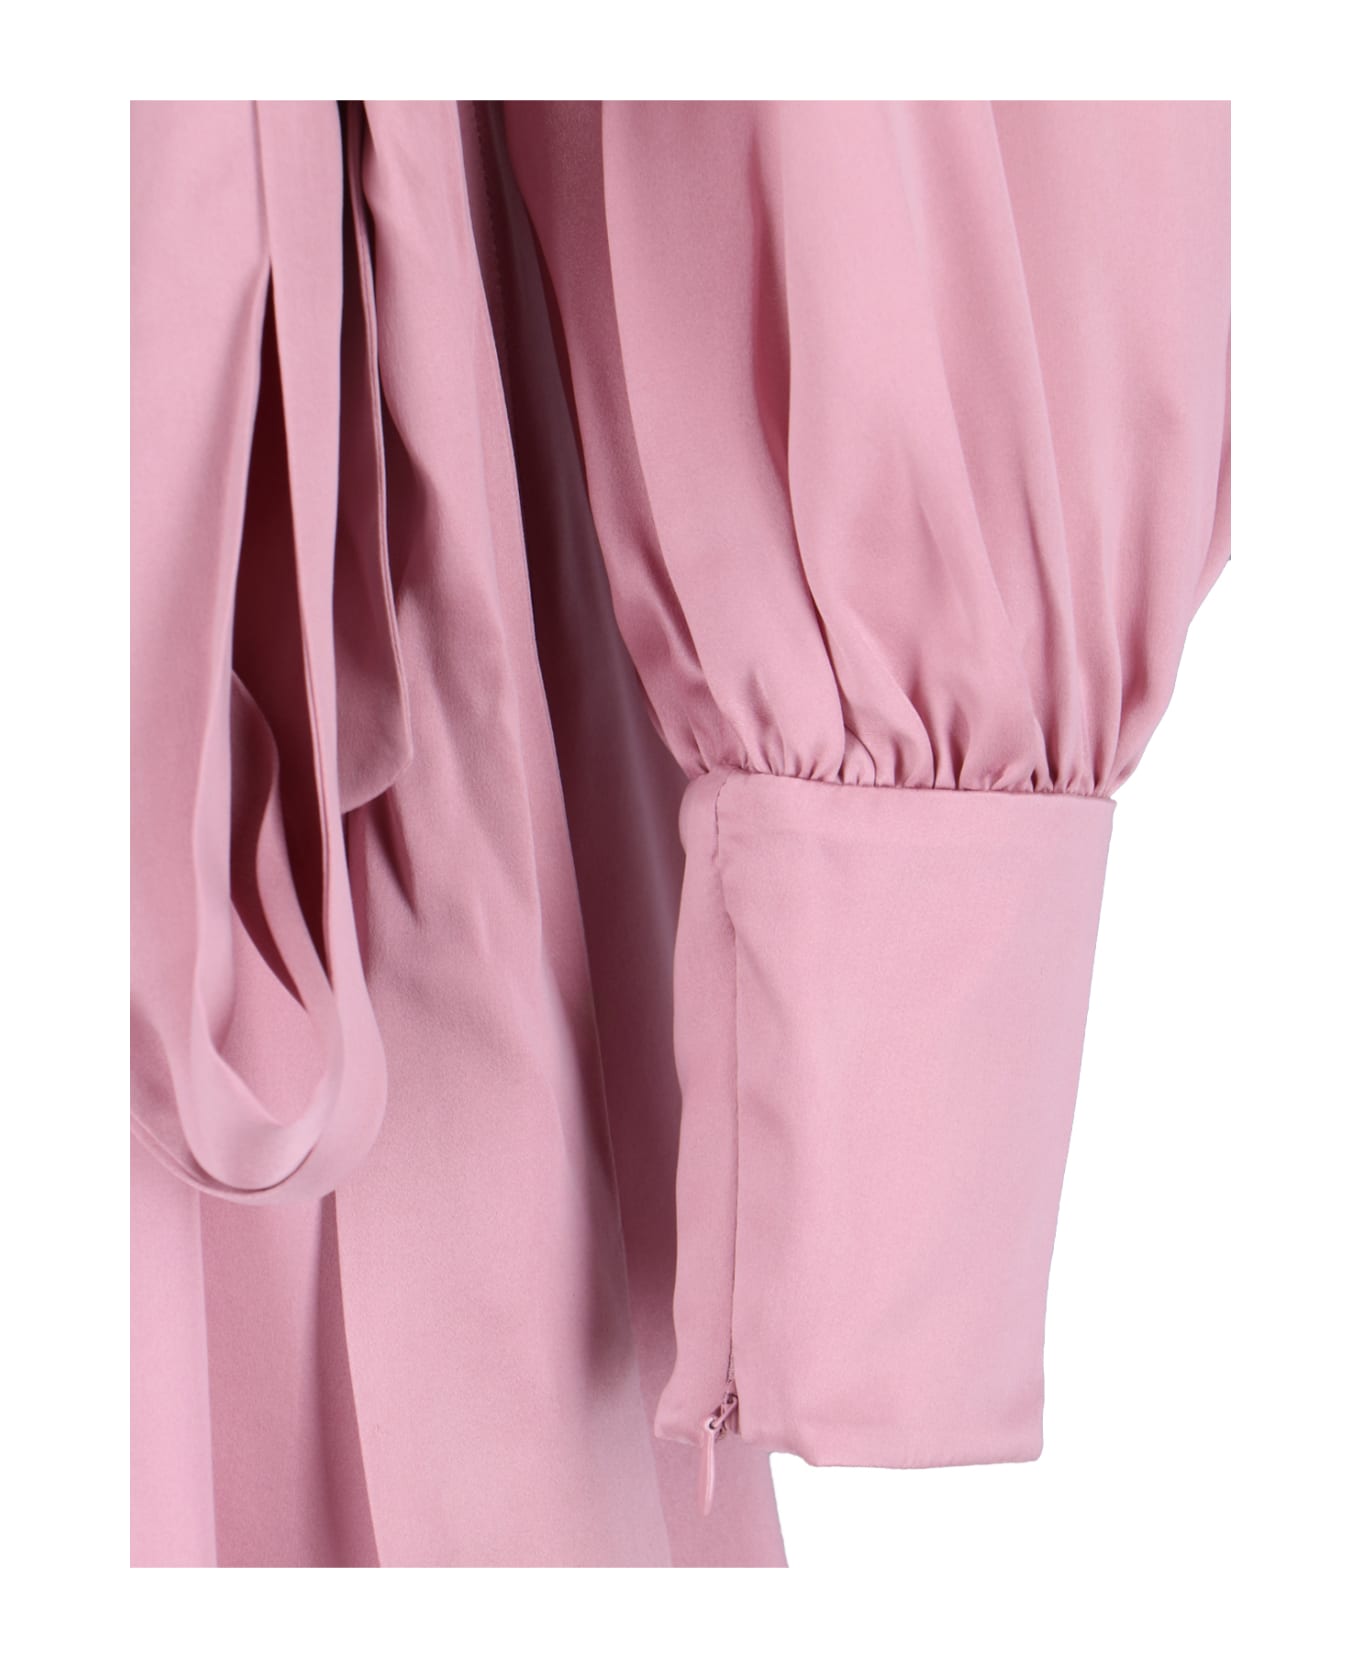 Zimmermann Asymmetrical Midi Dress - Pink